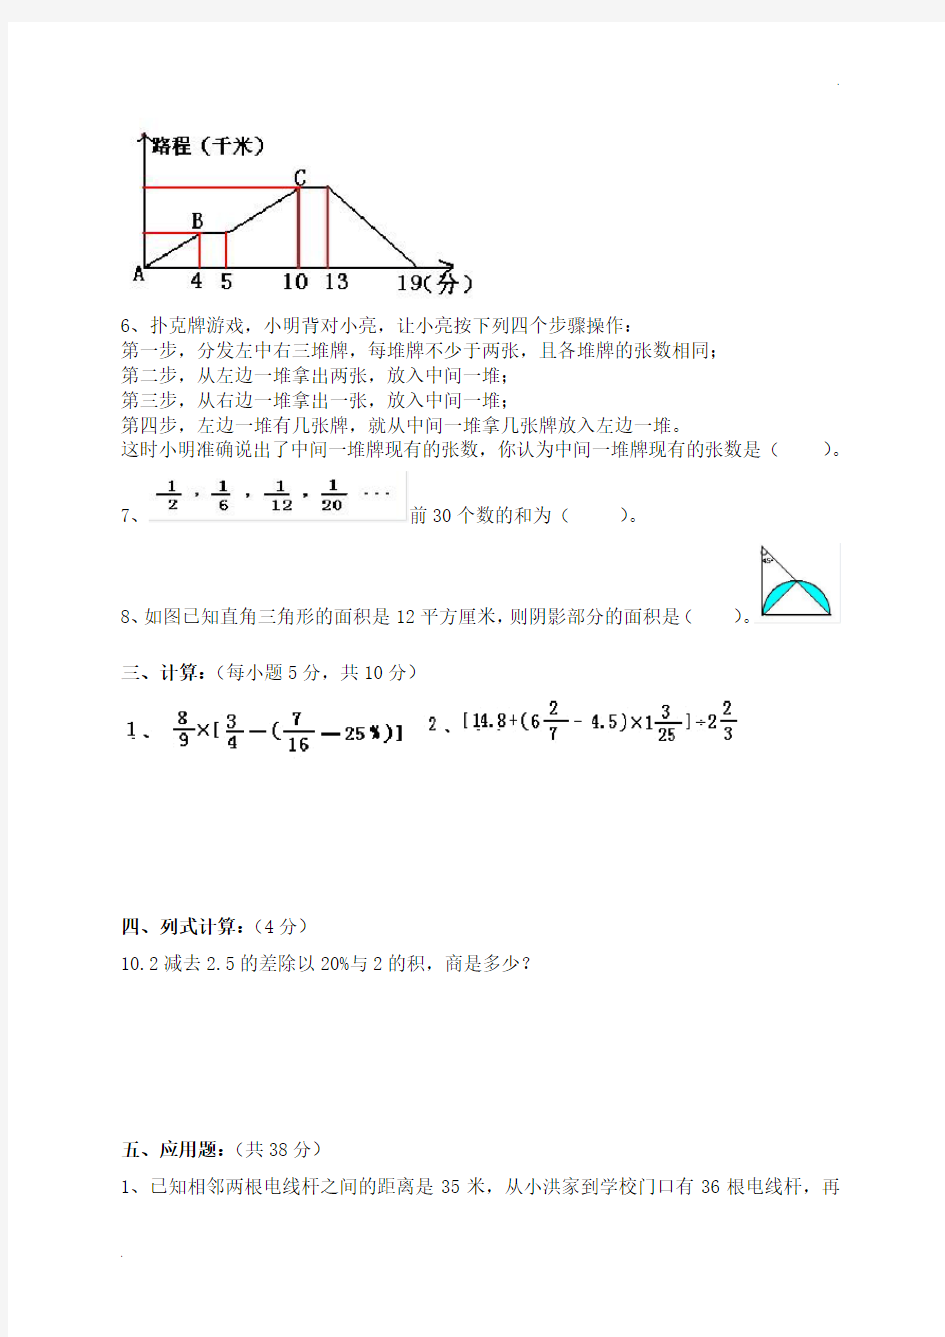 2019年(人教版)小升初考试数学试卷及答案